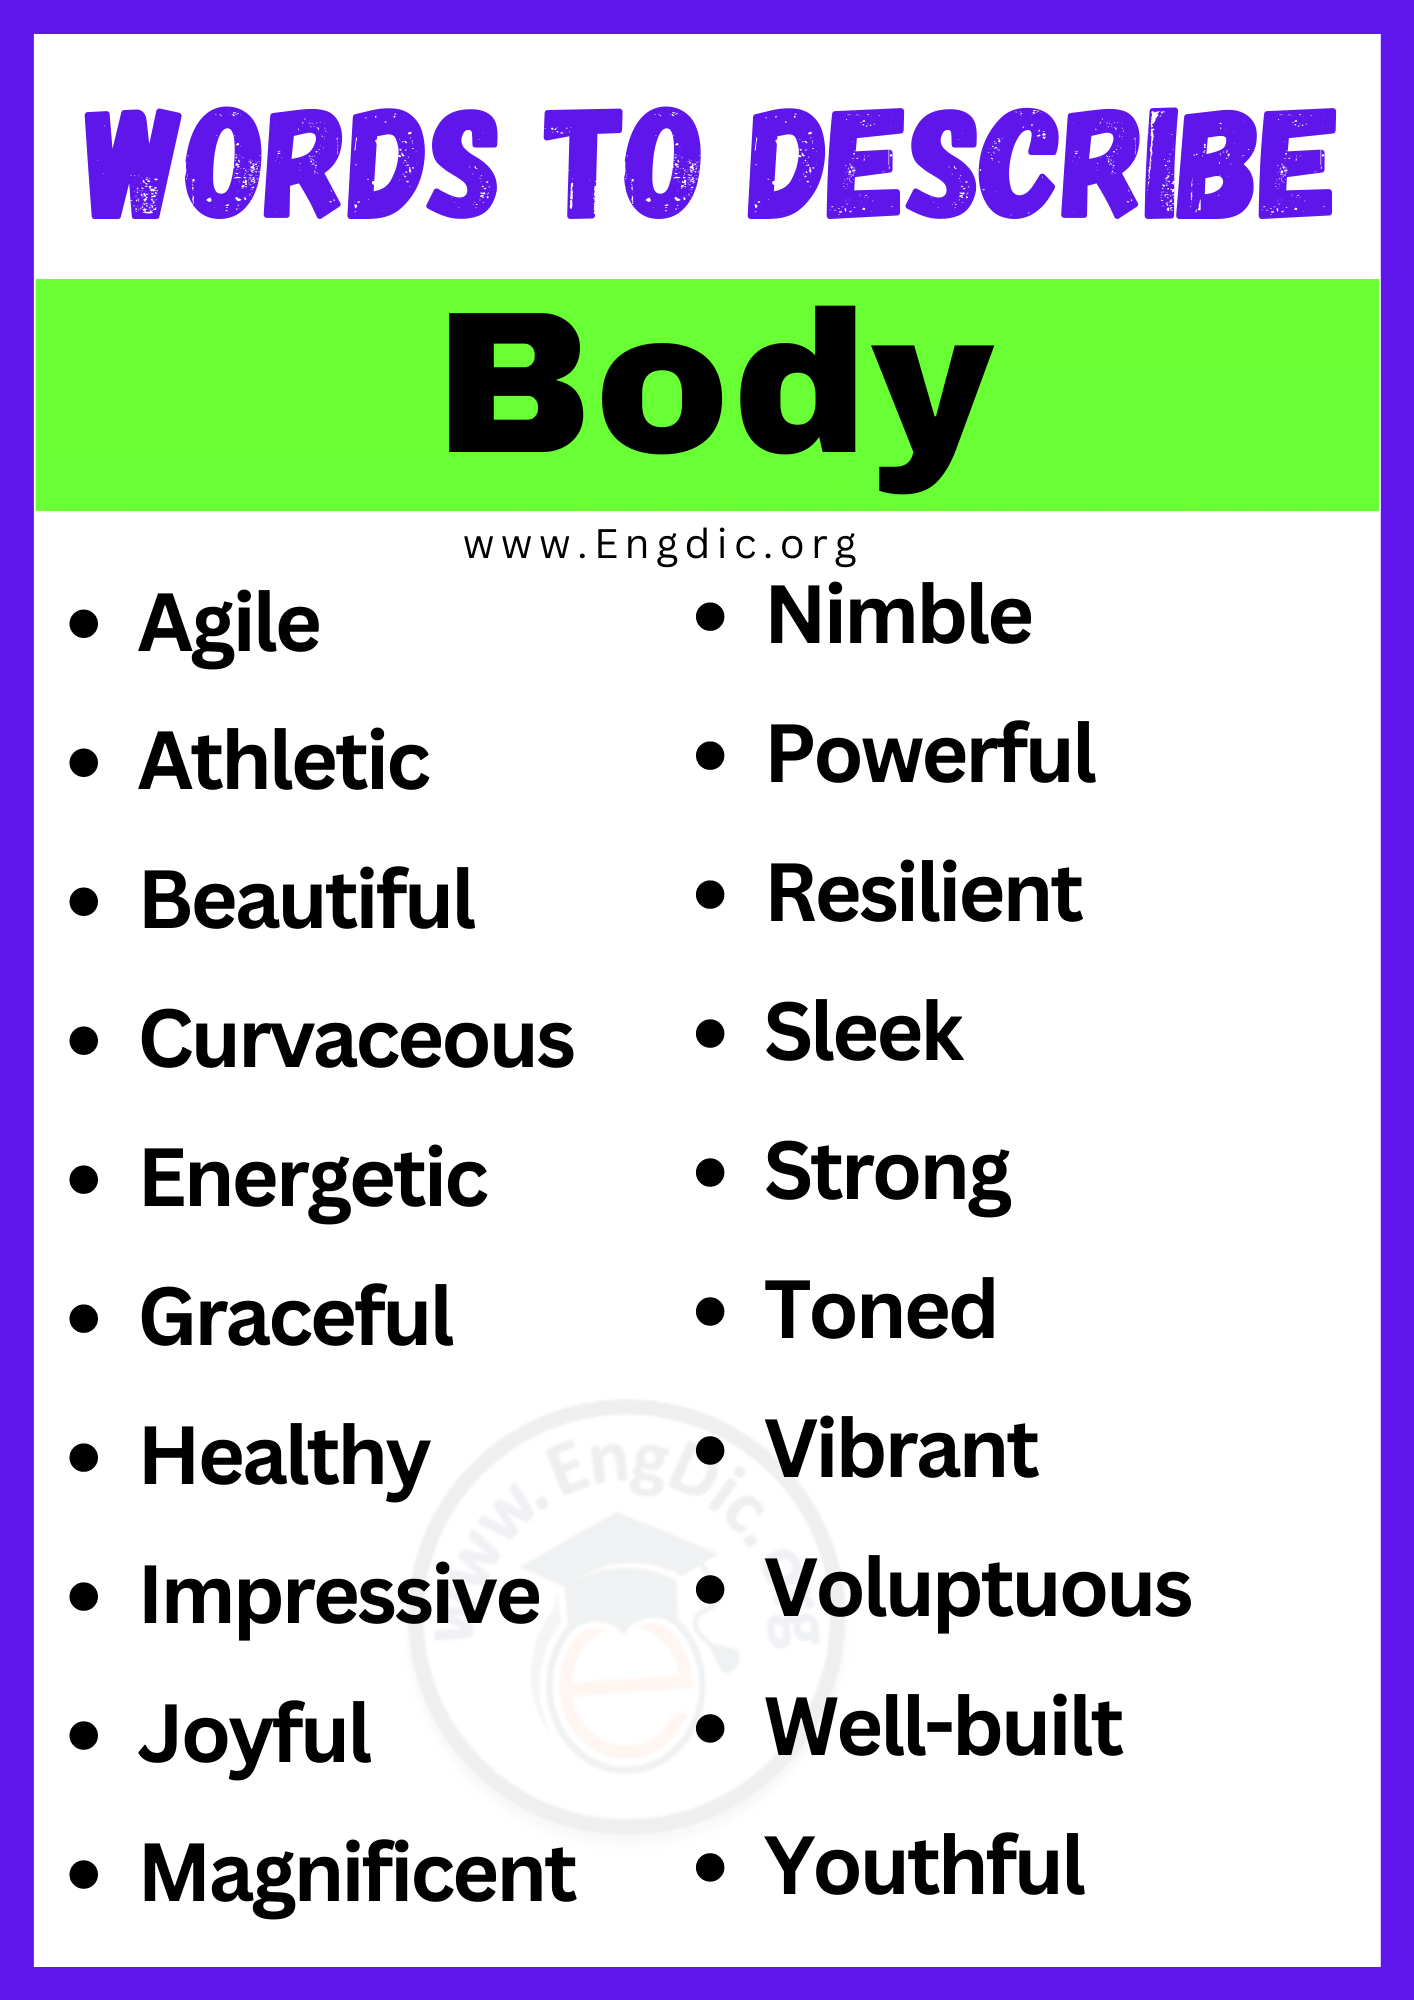 Words to Describe Body